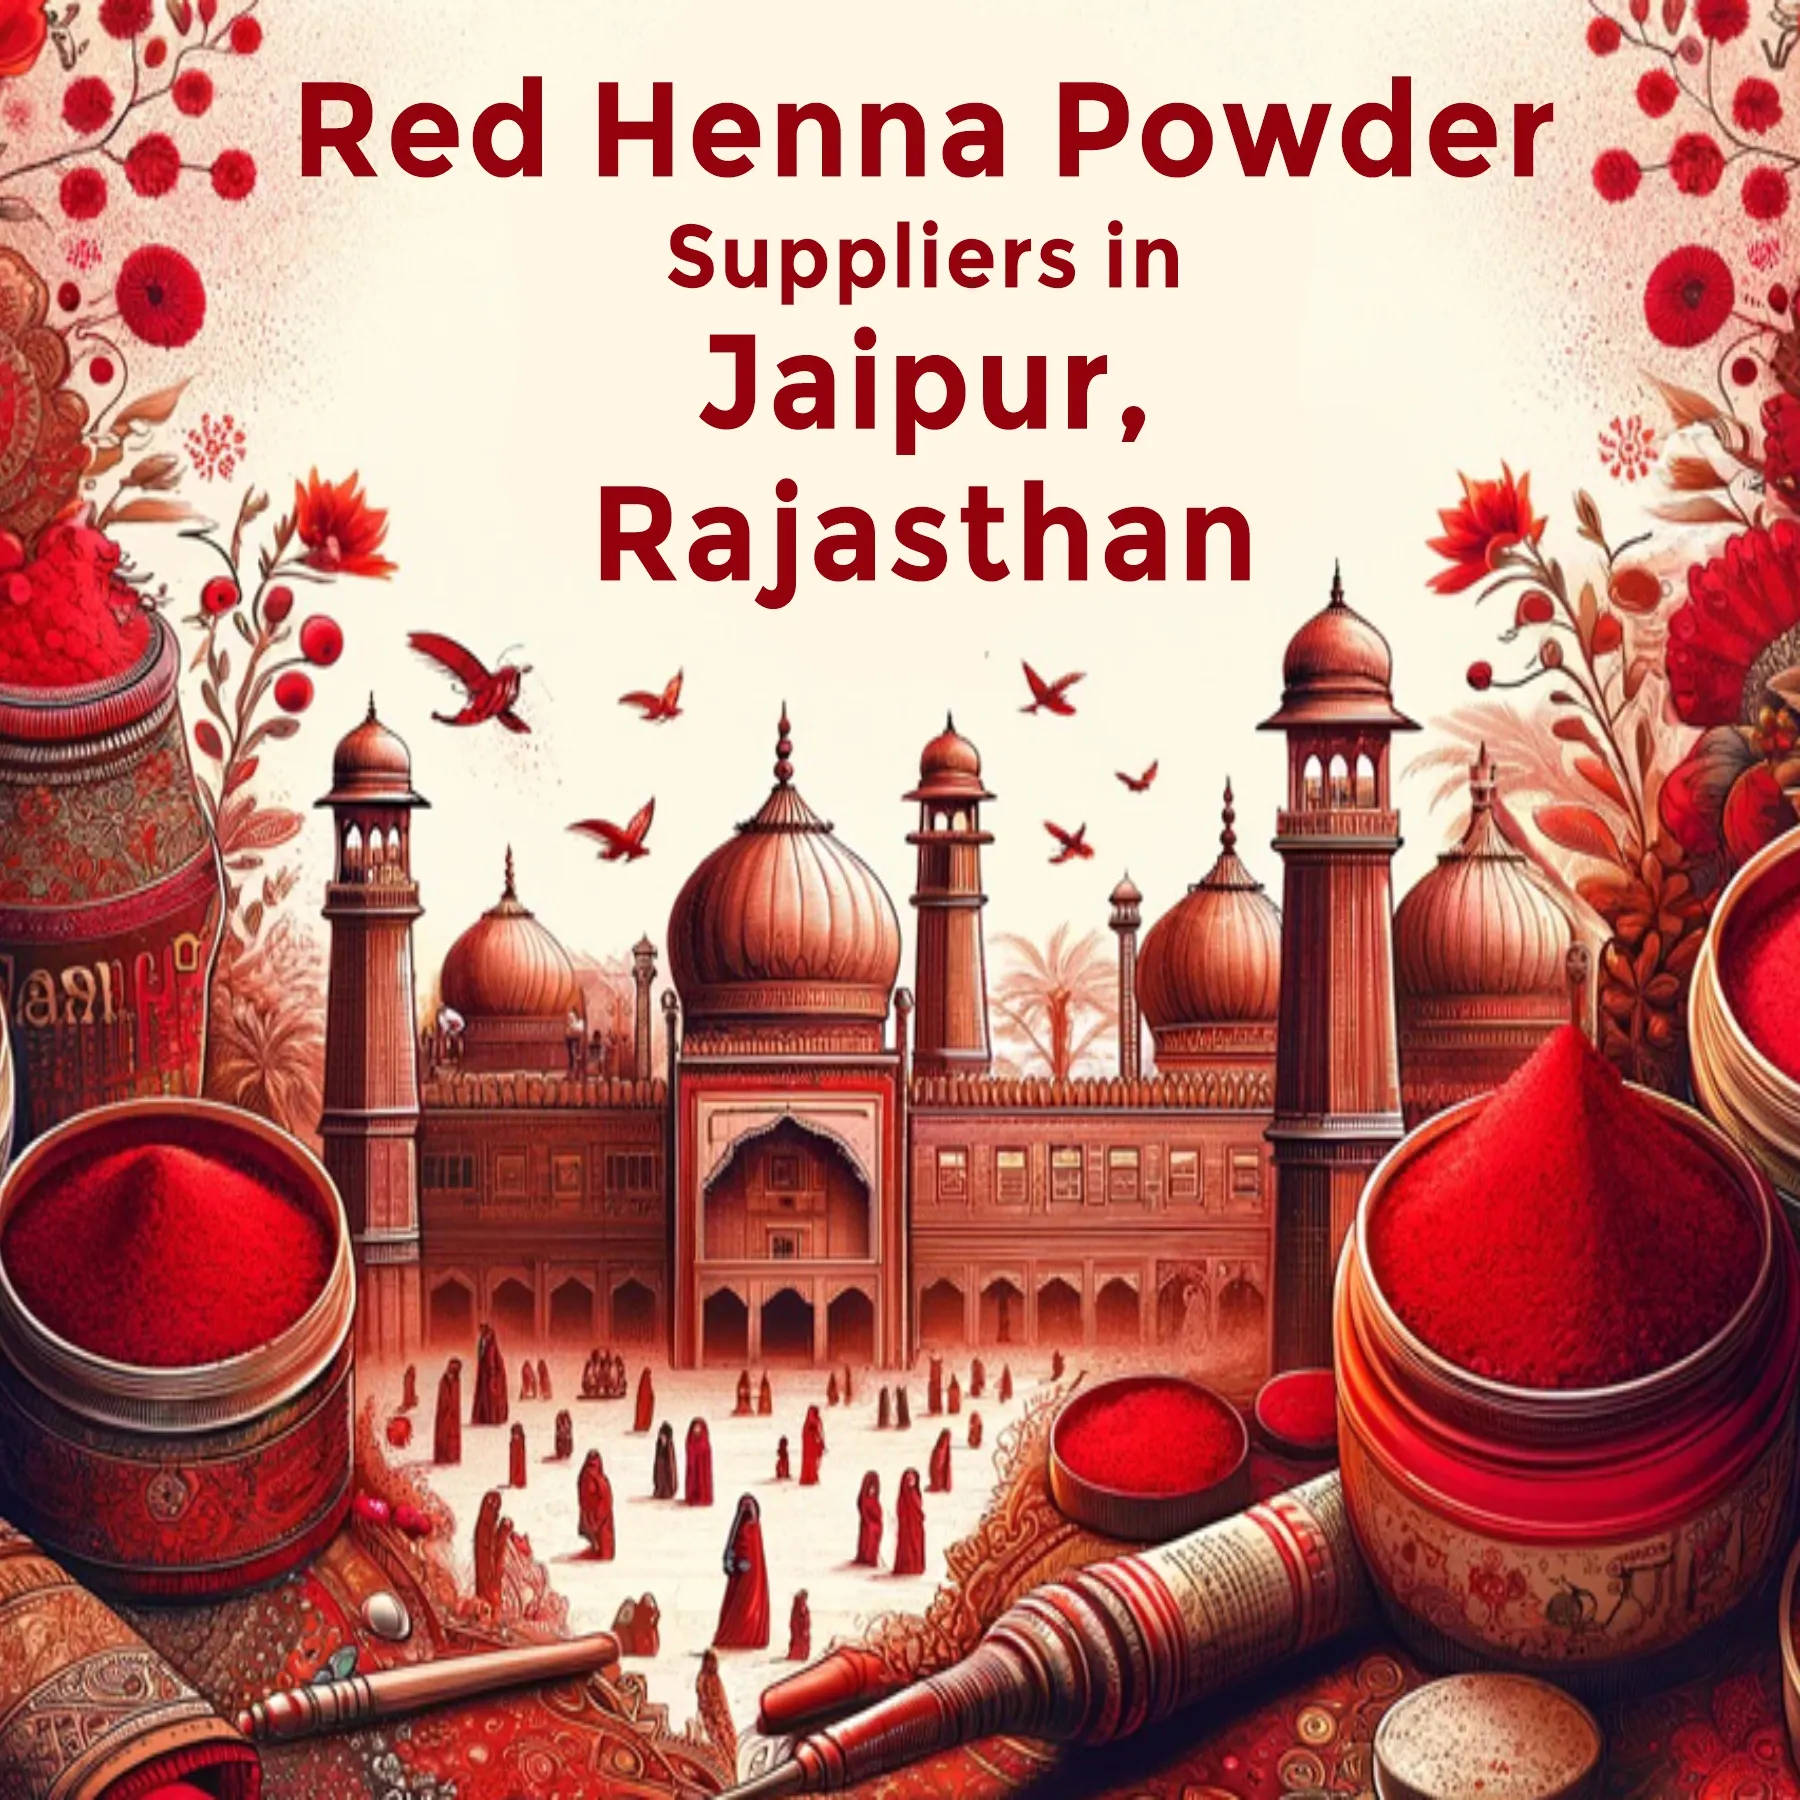 Red Henna supplier in jaipur - www.dkihenna.com